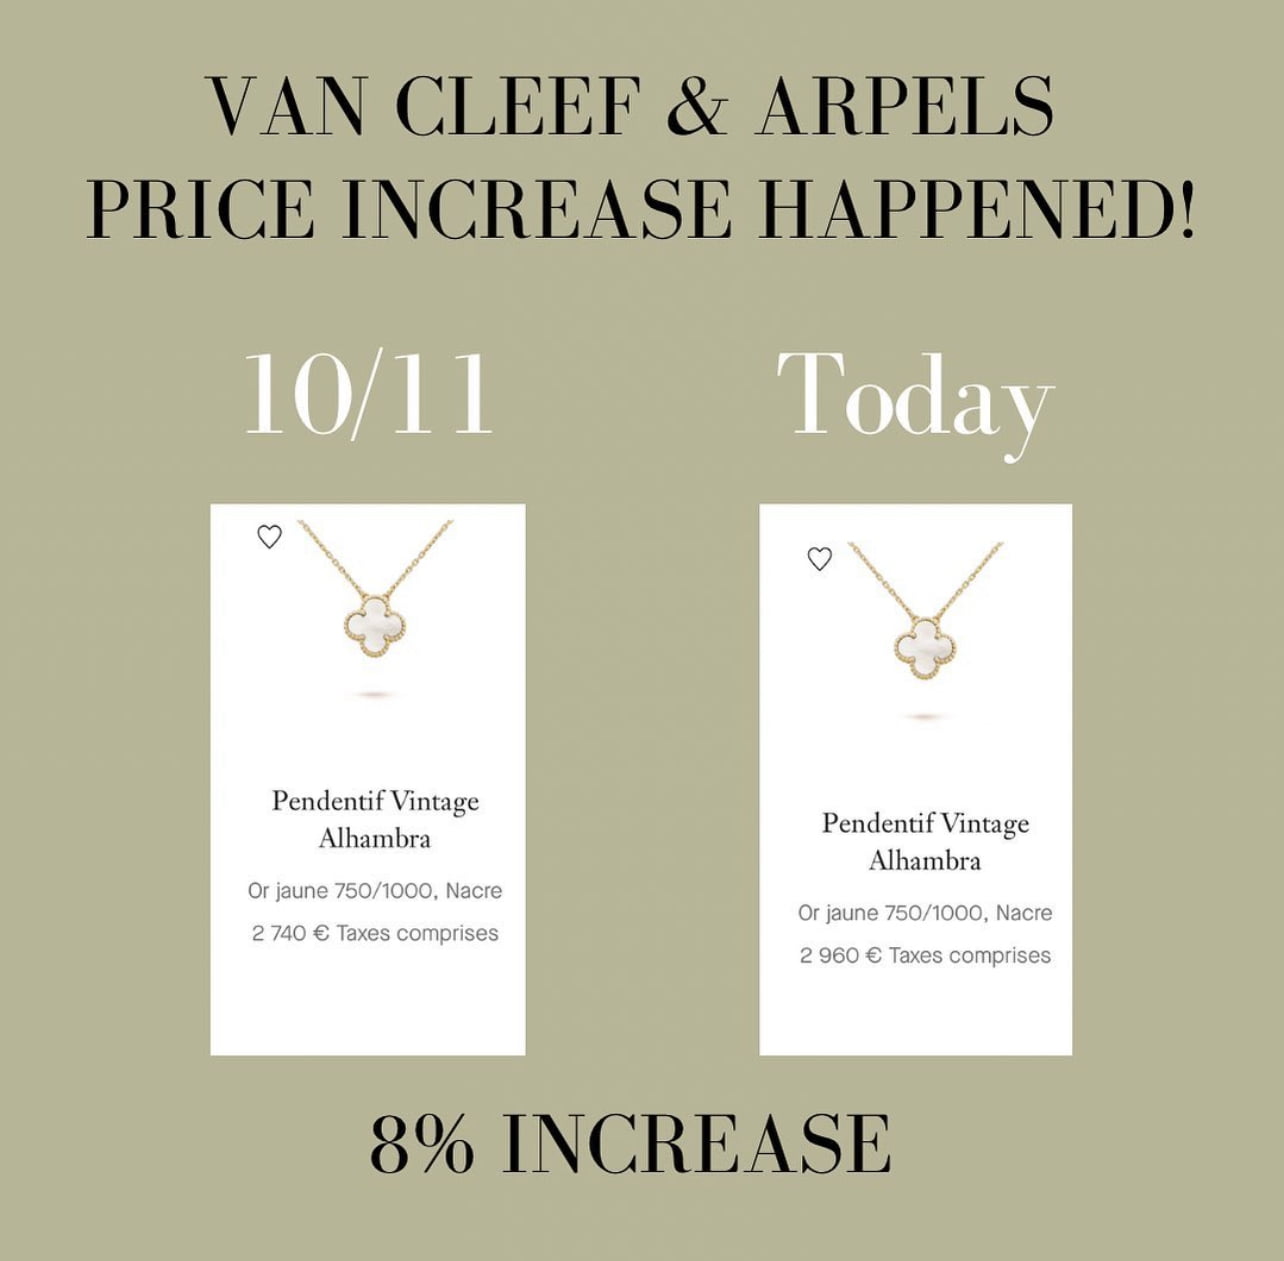 Van Cleef & Arpels: History Of The Brand